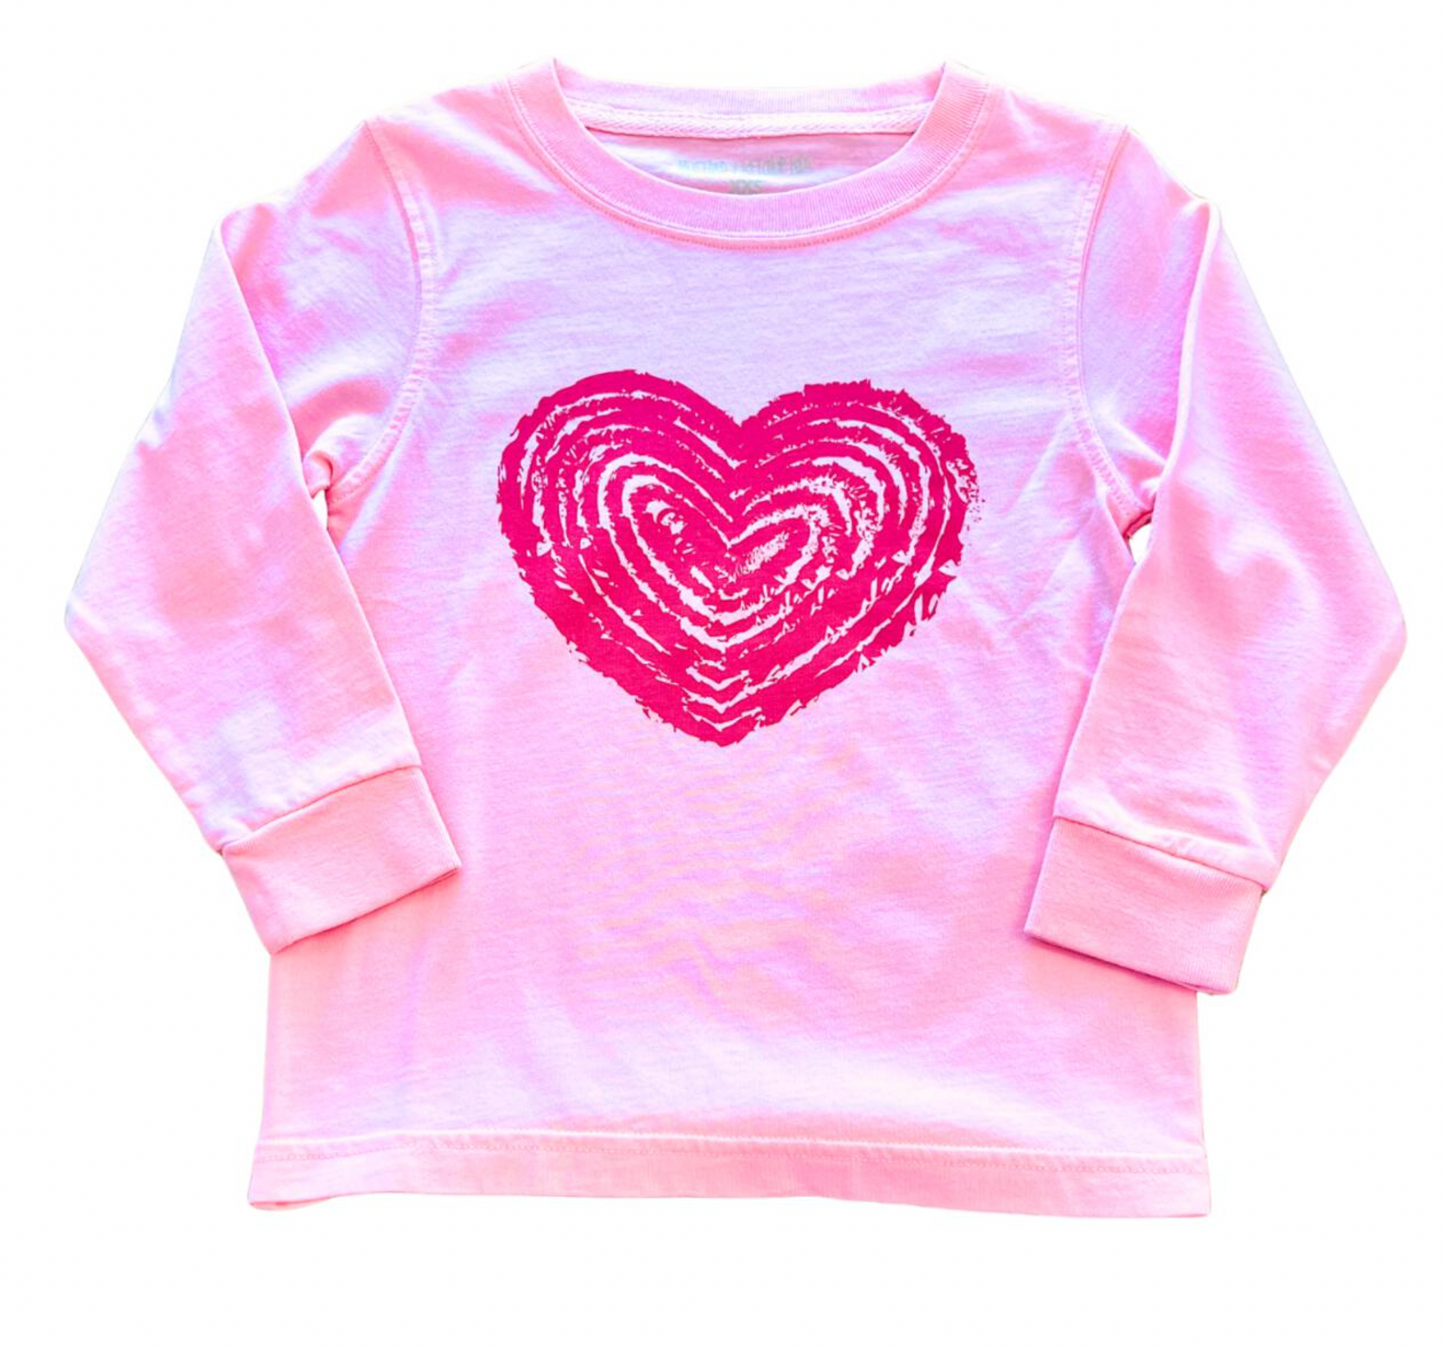 Long Sleeve Light Pink Heart T-Shirt